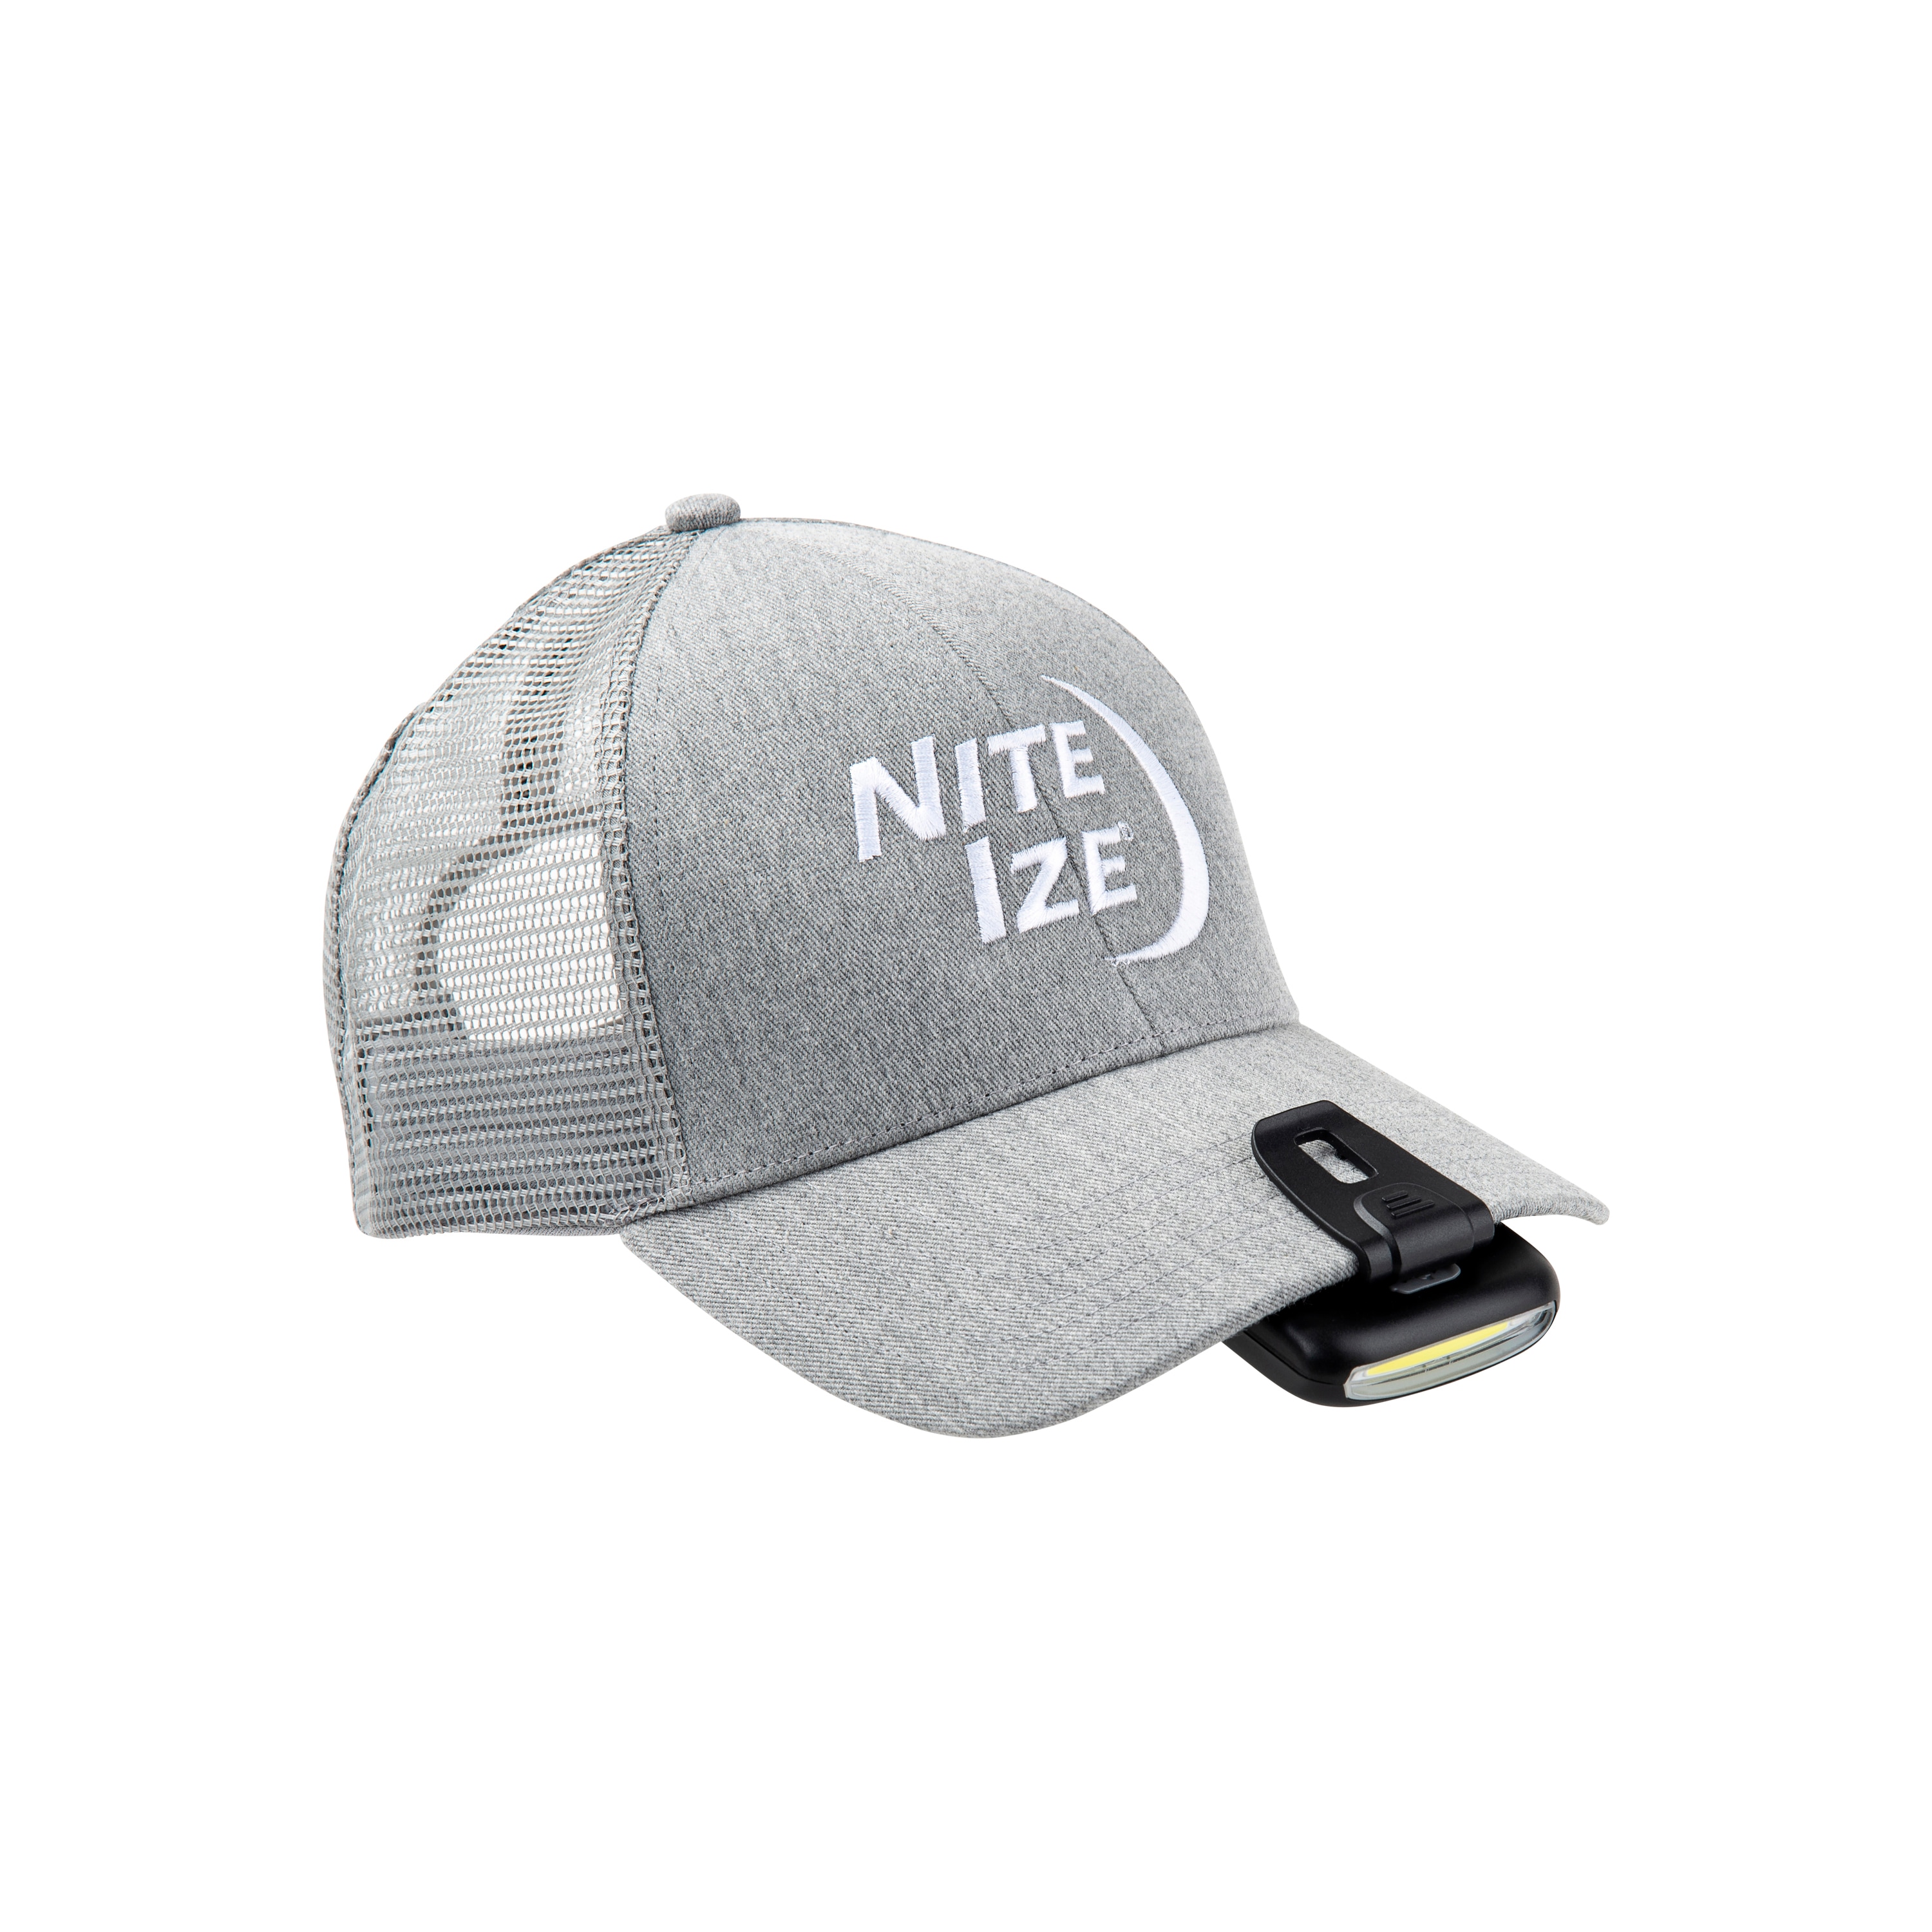 Nite Ize Radiant 170 lampe frontale clip casquette/chapeau LED